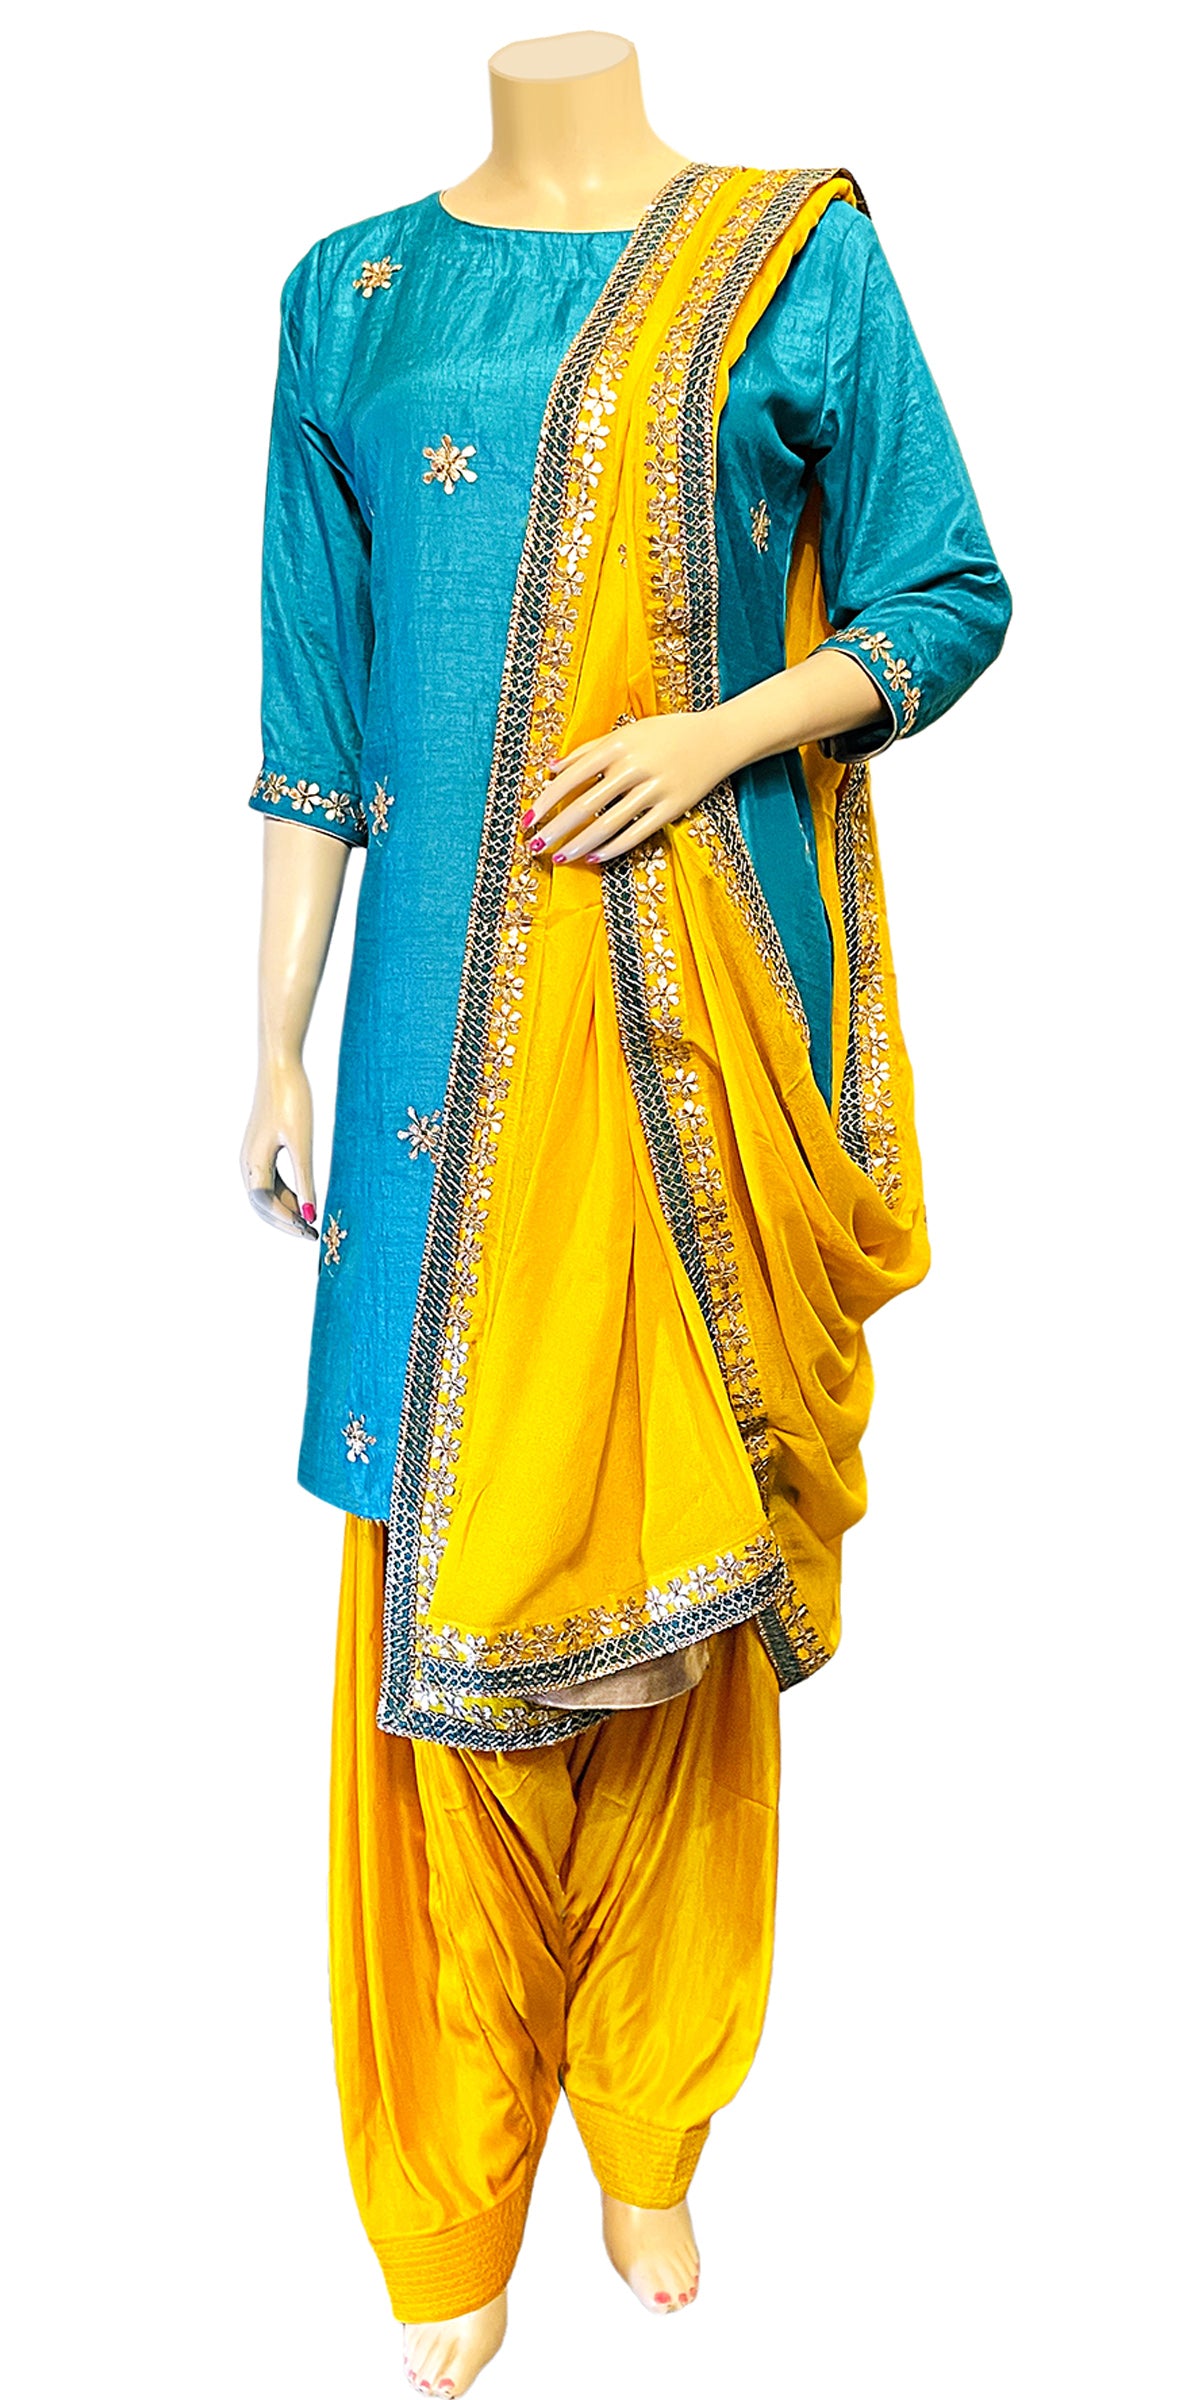 Yellow Salwar Suit, Light blue kameez salwar, Full Patiala Salwar suit with Dupatta, Gota patti salwar kameez, Indian pooja wear